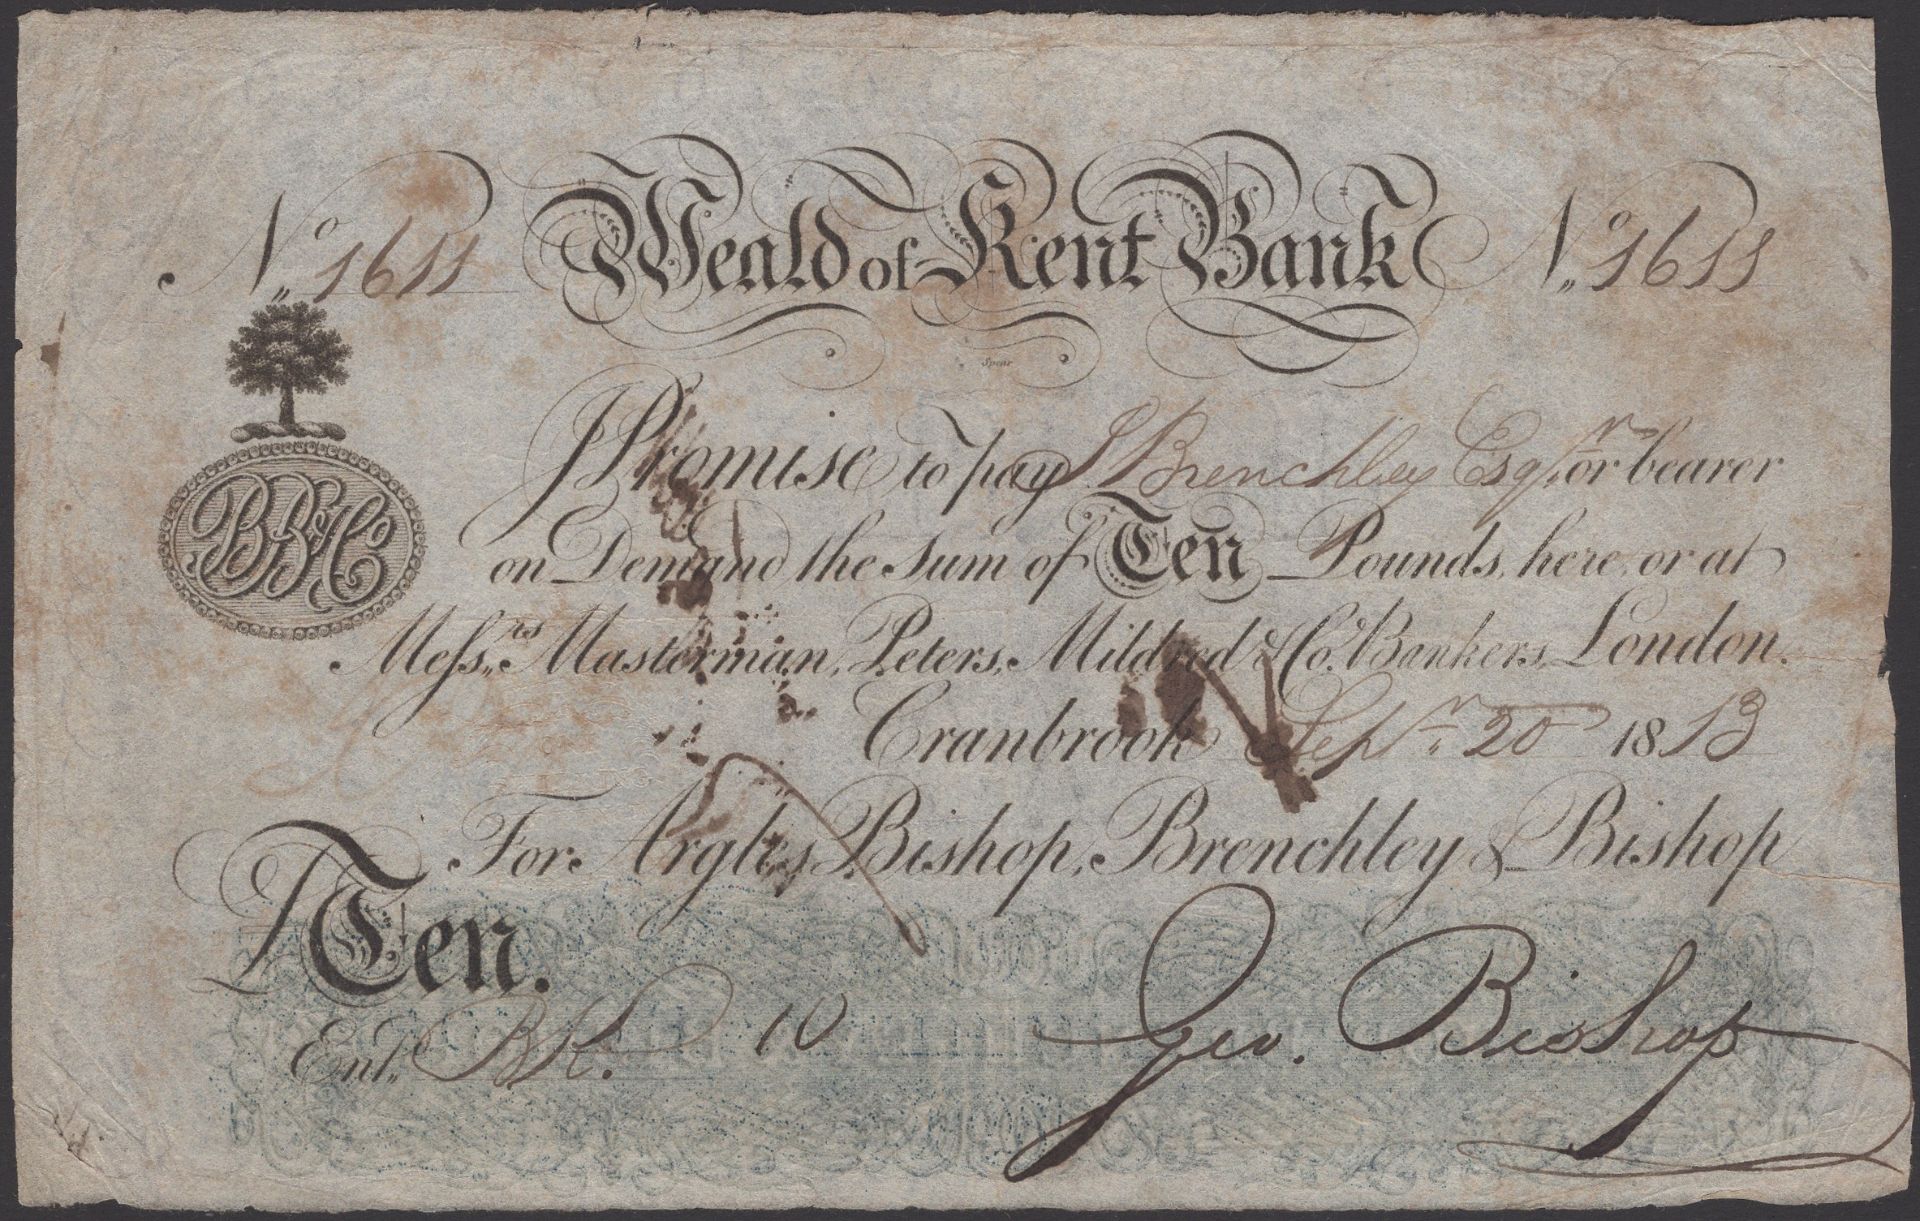 Weald of Kent Bank, Cranbrook, for Argles, Bishop, Brenchley & Bishop, Â£10, 20 September 191...